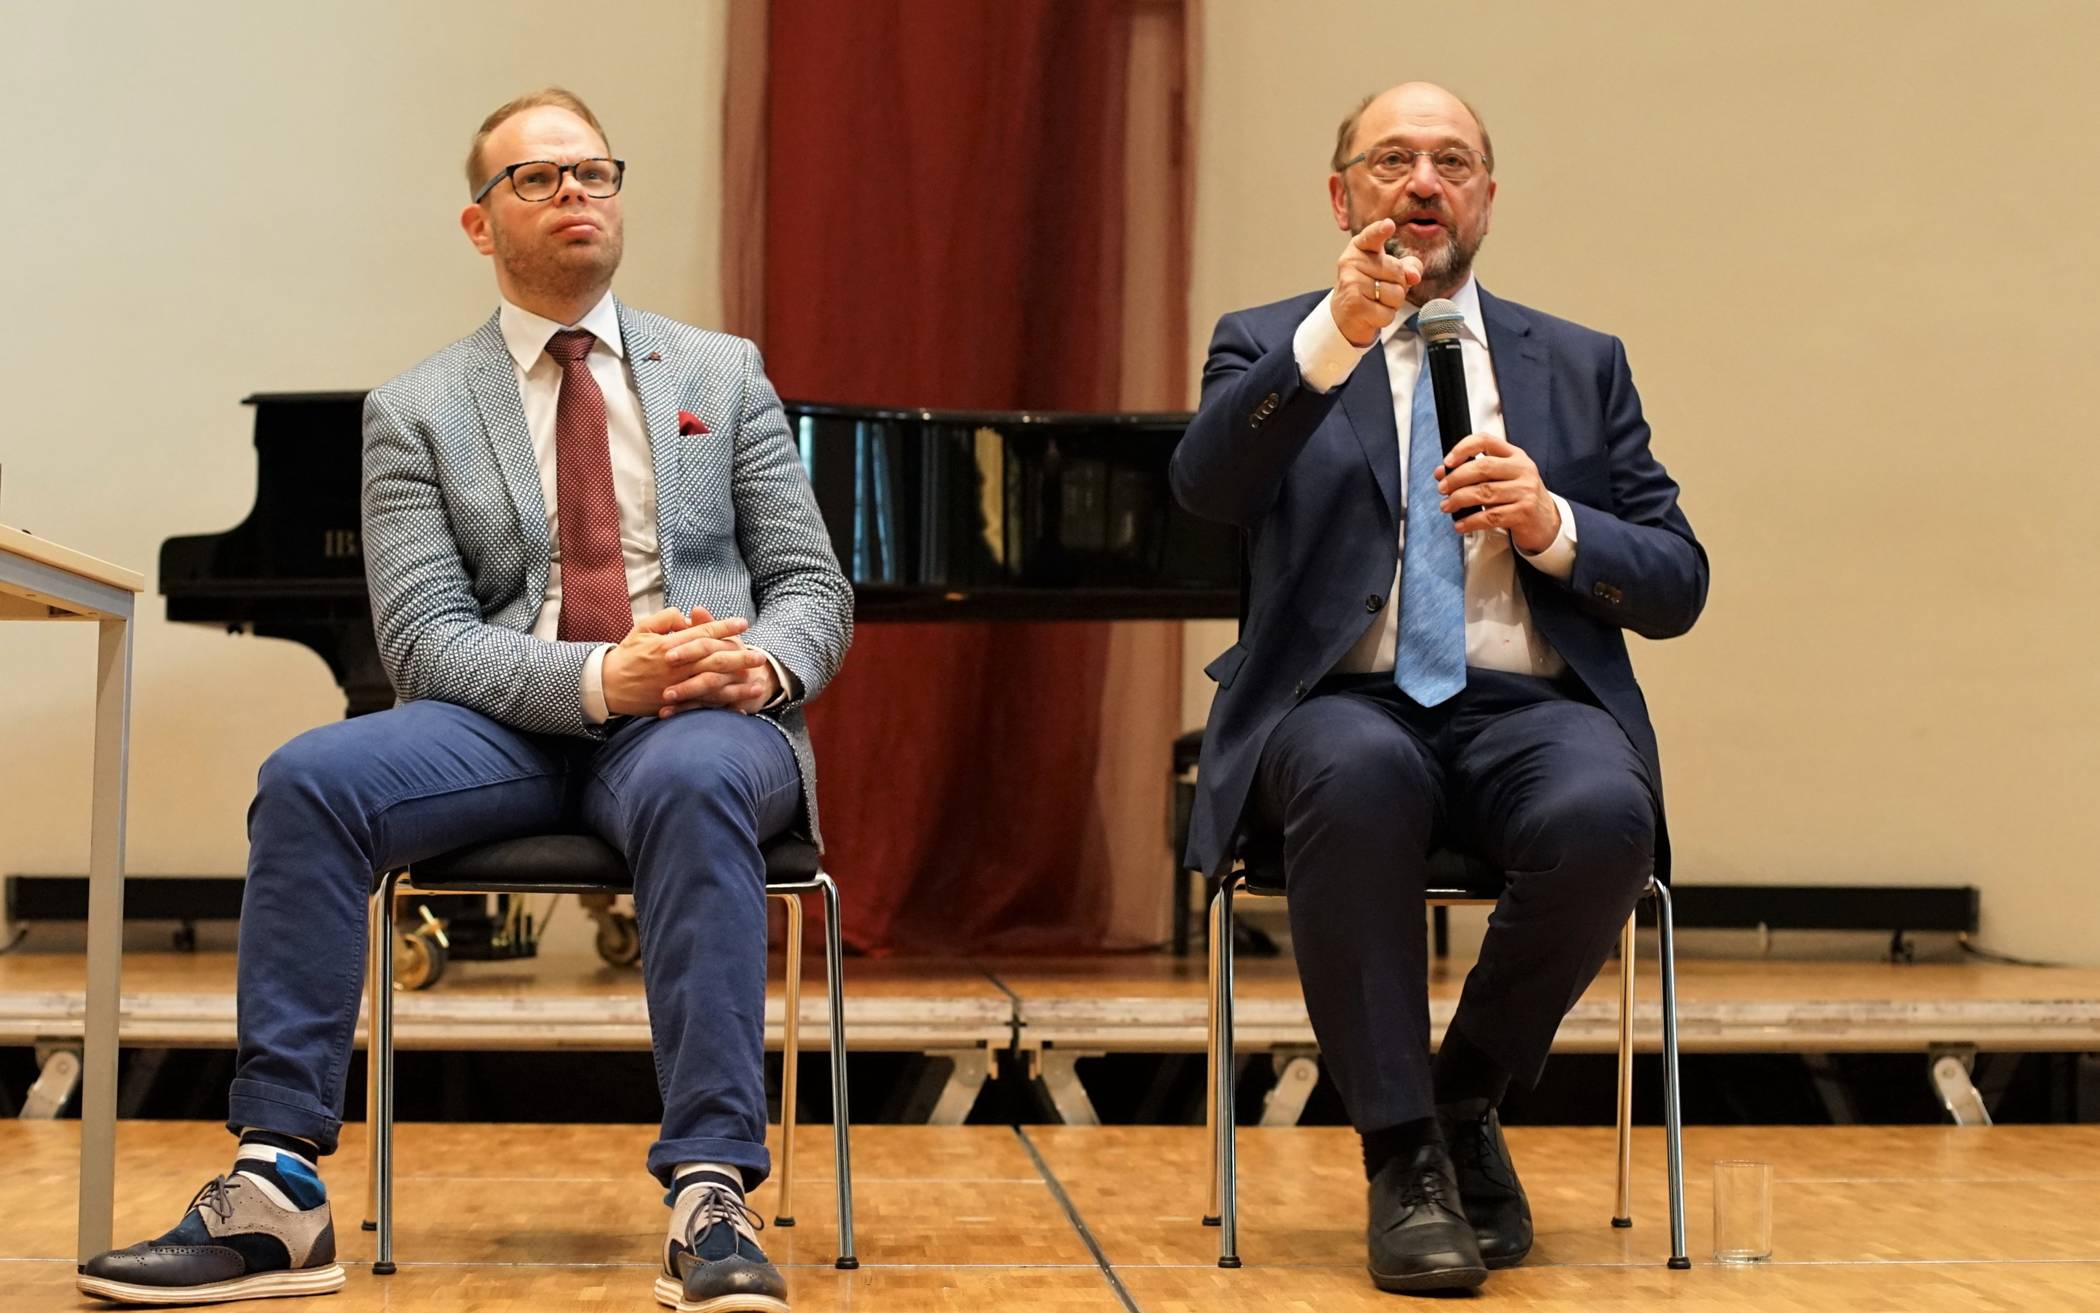  Helge Lindh (li.) mit Martin Schulzim Jahr 2019 bei einer Diskussionsveranstaltung in Wuppertal. 